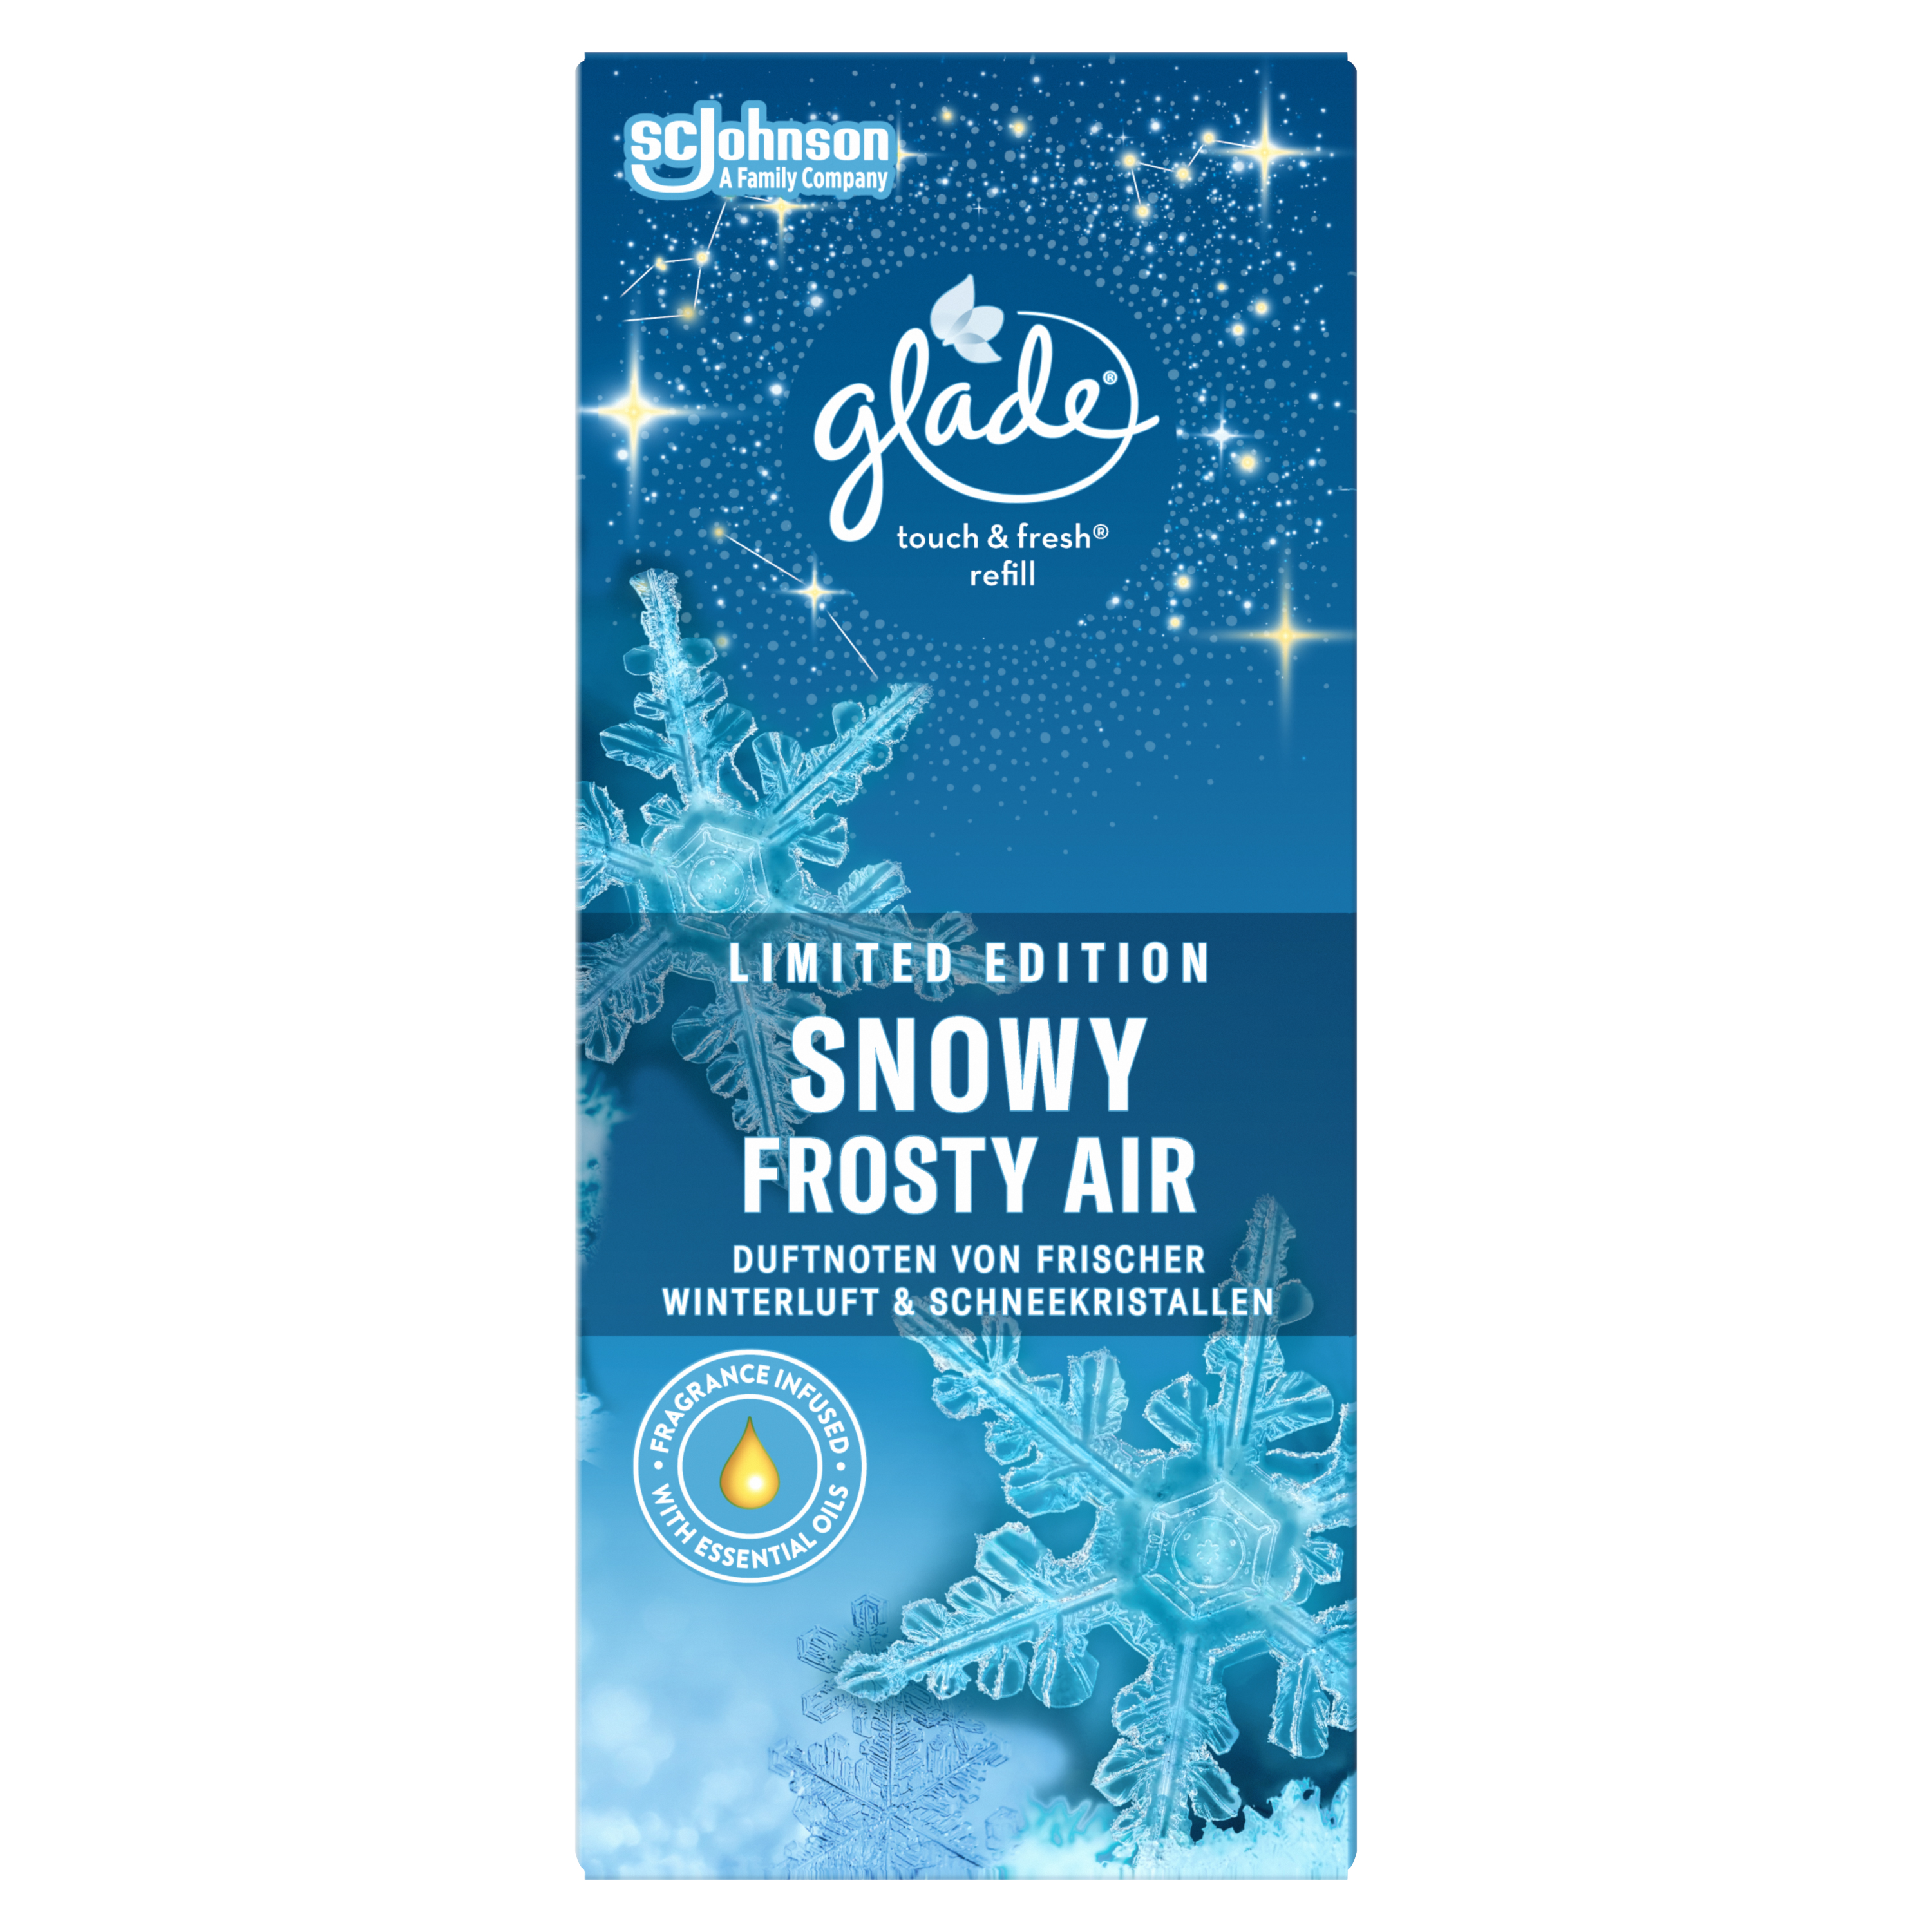 Glade® touch & fresh Nachfüller Snowy Frosty Air